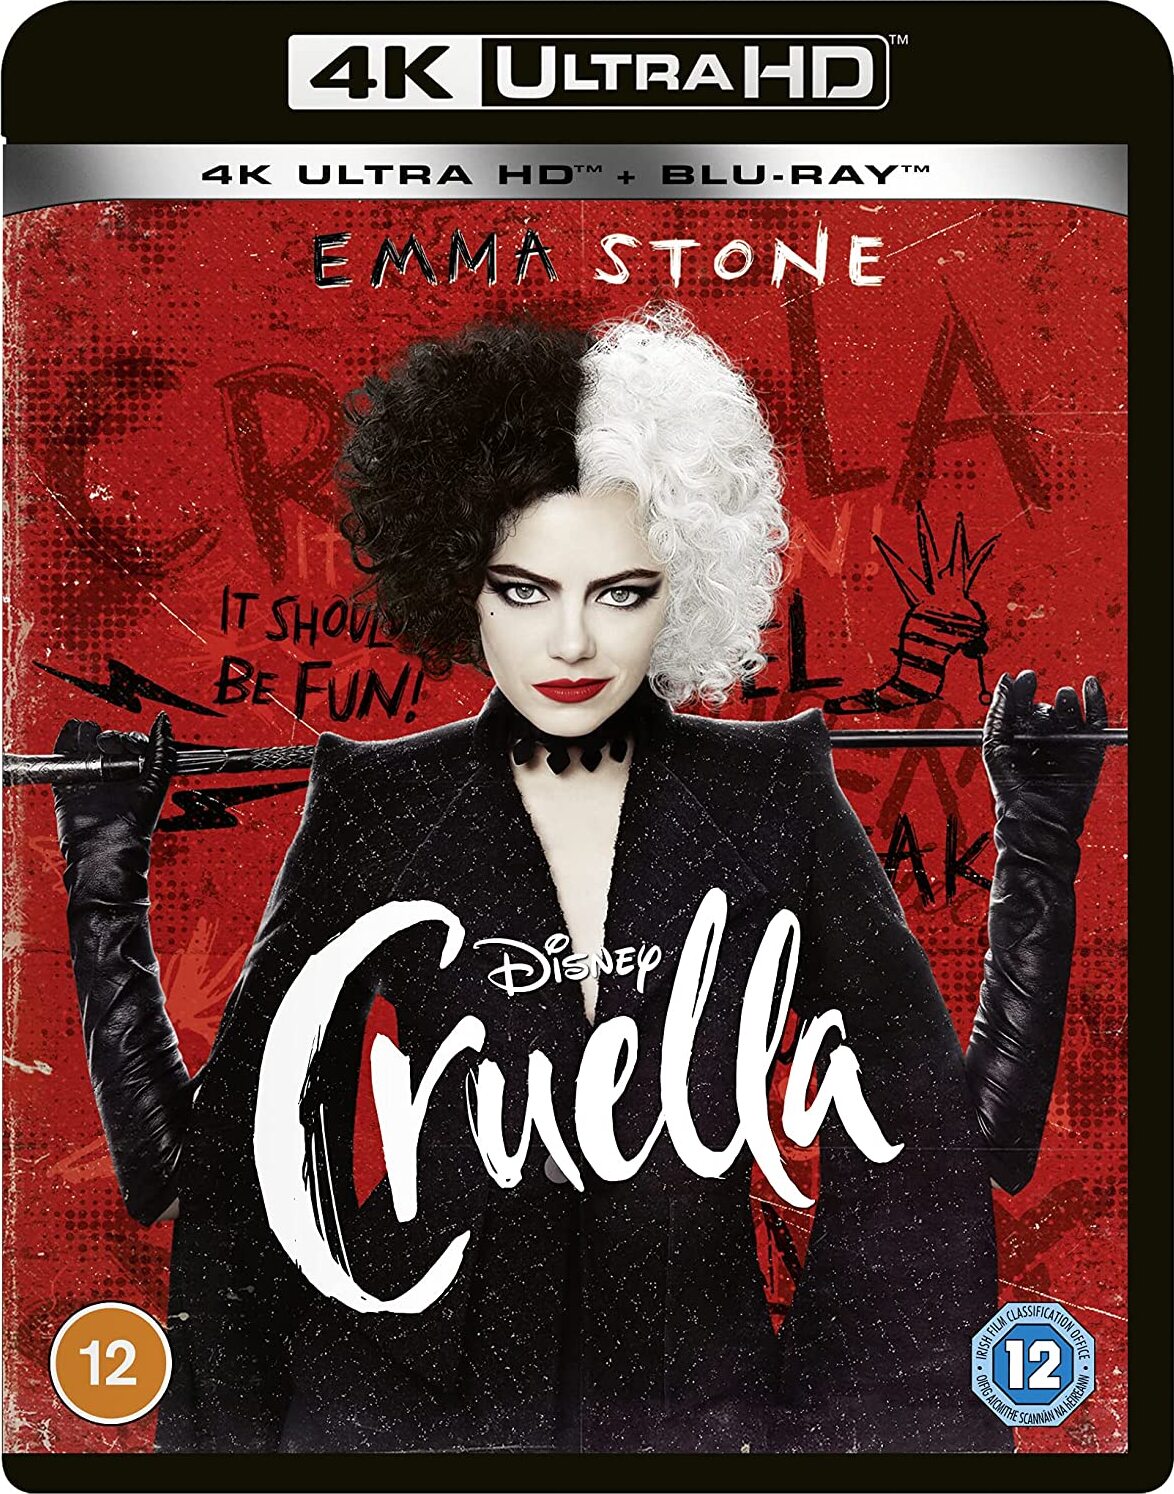 黑白魔女库伊拉/《101忠狗》真人前传/黑白魔后(港) [DIY简繁英字幕] Cruella 2021 2160p EUR UHD Blu-ray HEVC HDR TrueHD Atmos 7 1-AA@OurBits    [59.4 GB  ]-1.jpg